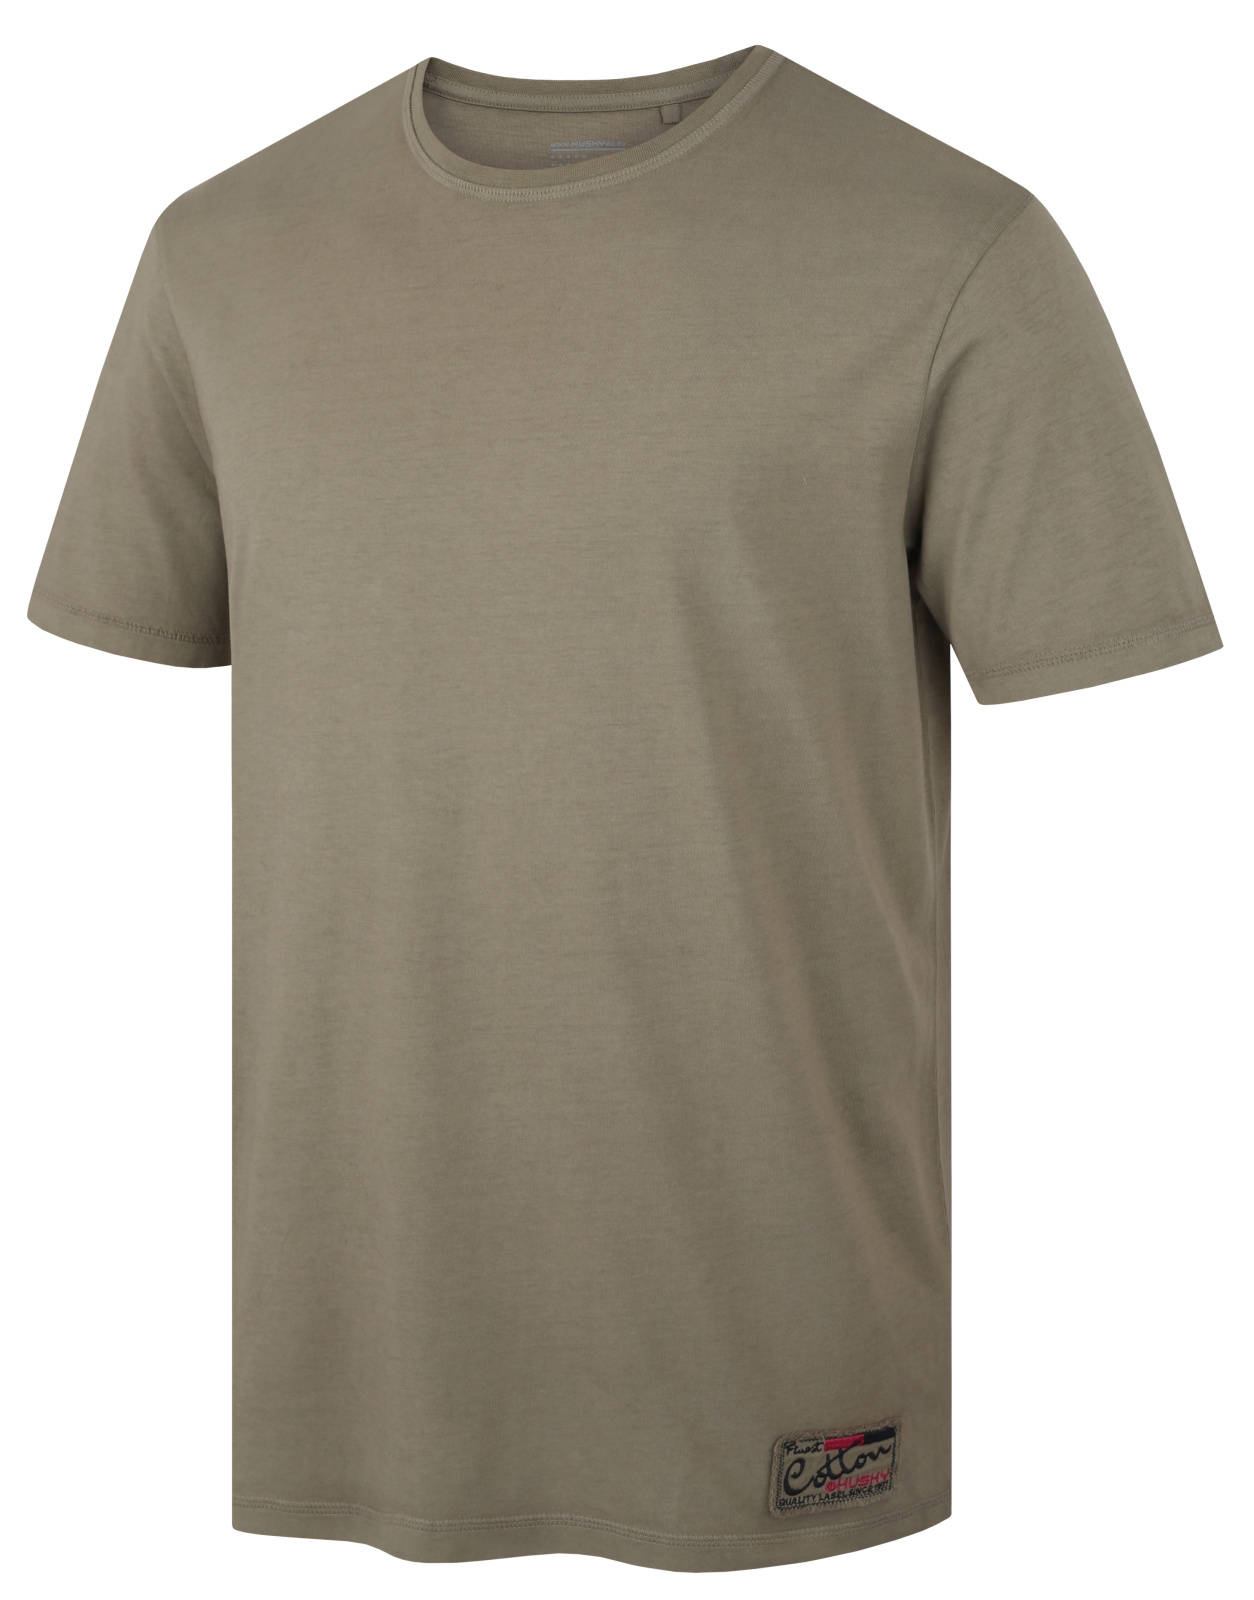 Husky Pánské bavlněné triko Tee Base M dark khaki Velikost: S pánské tričko s krátkým rukávem